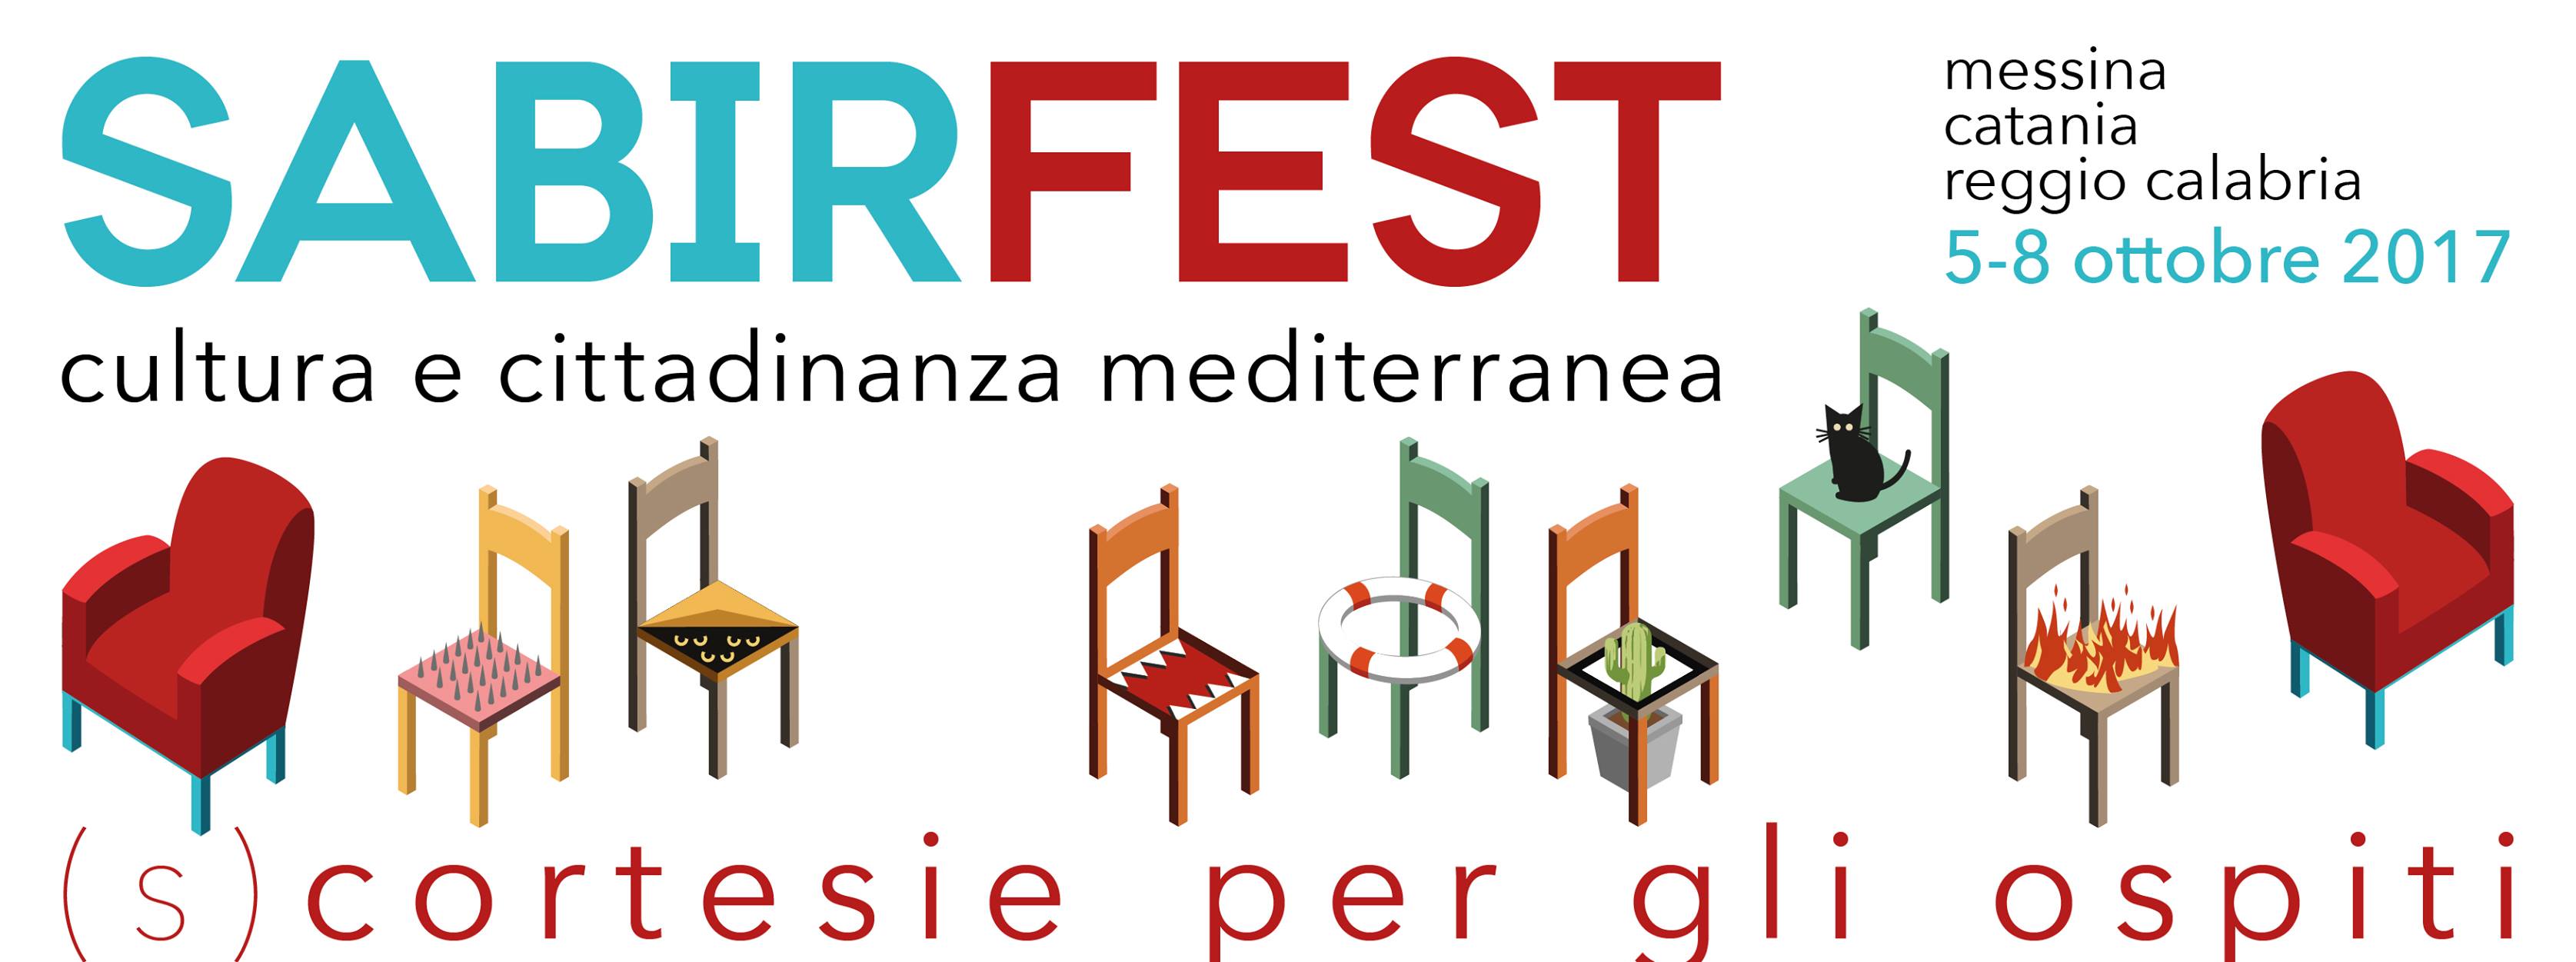 Locandina della quarta edizione del Sabir Fest - Messina